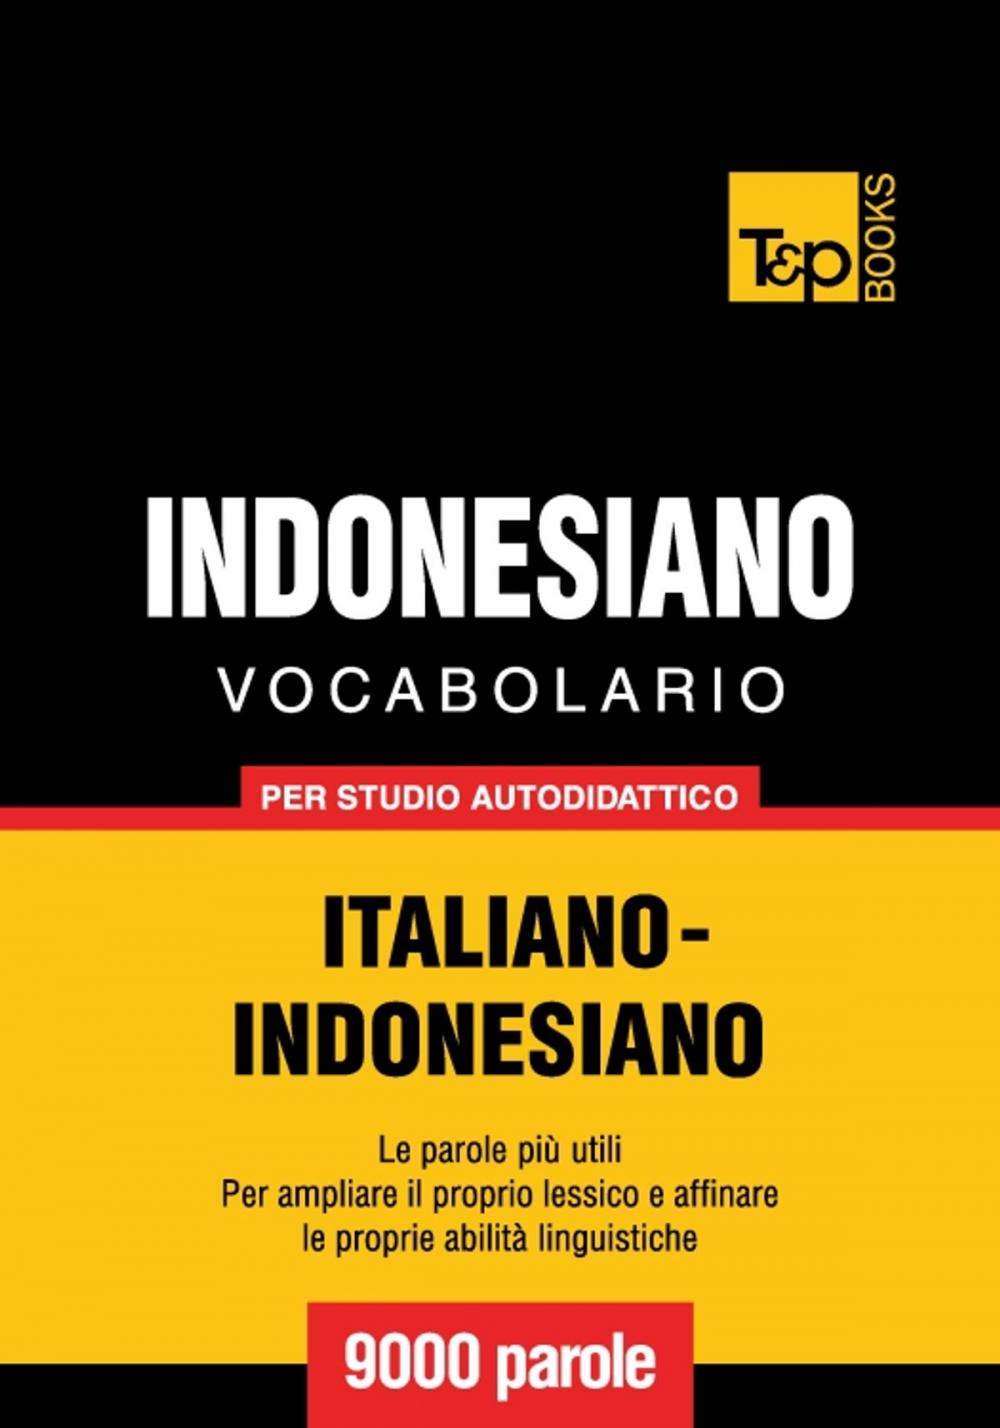 Big bigCover of Vocabolario Italiano-Indonesiano per studio autodidattico - 9000 parole